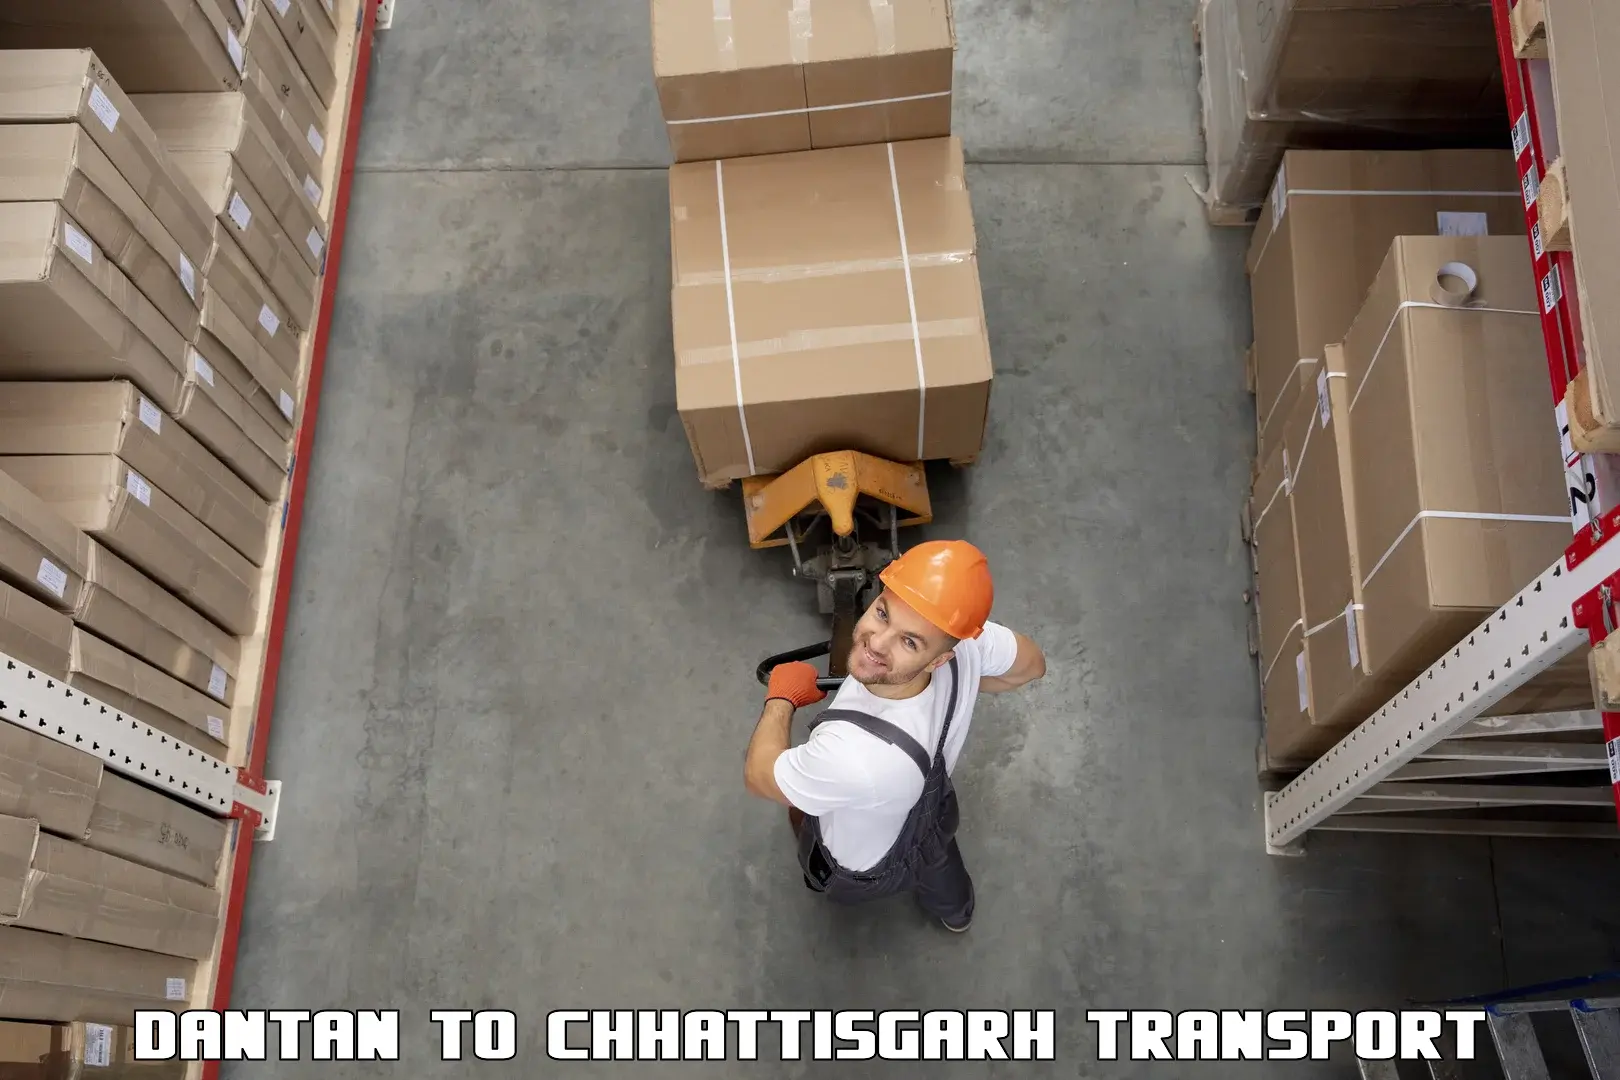 Container transport service Dantan to Raigarh Chhattisgarh